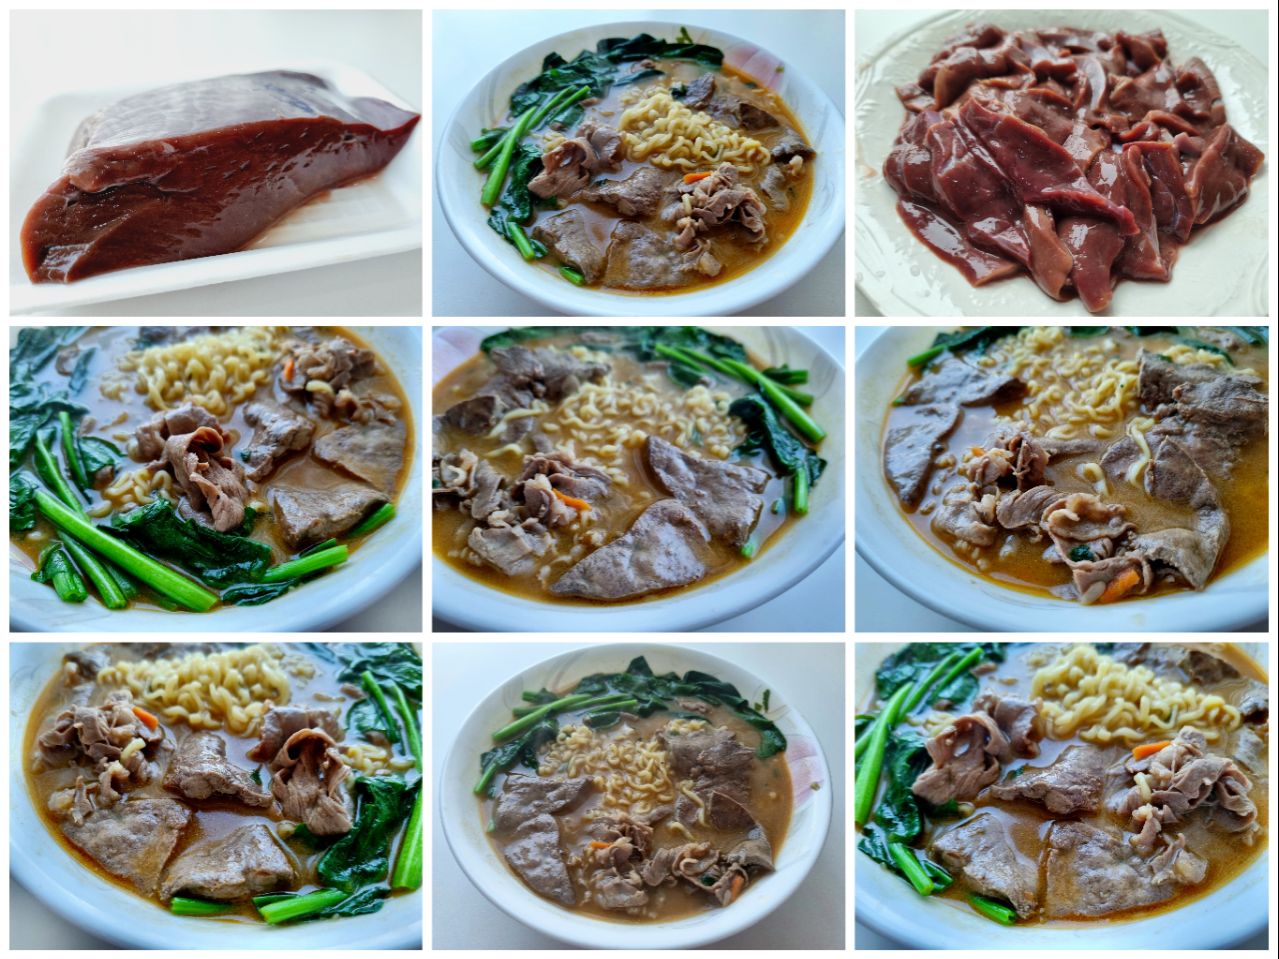 猪肝面 - noodle soup with liver